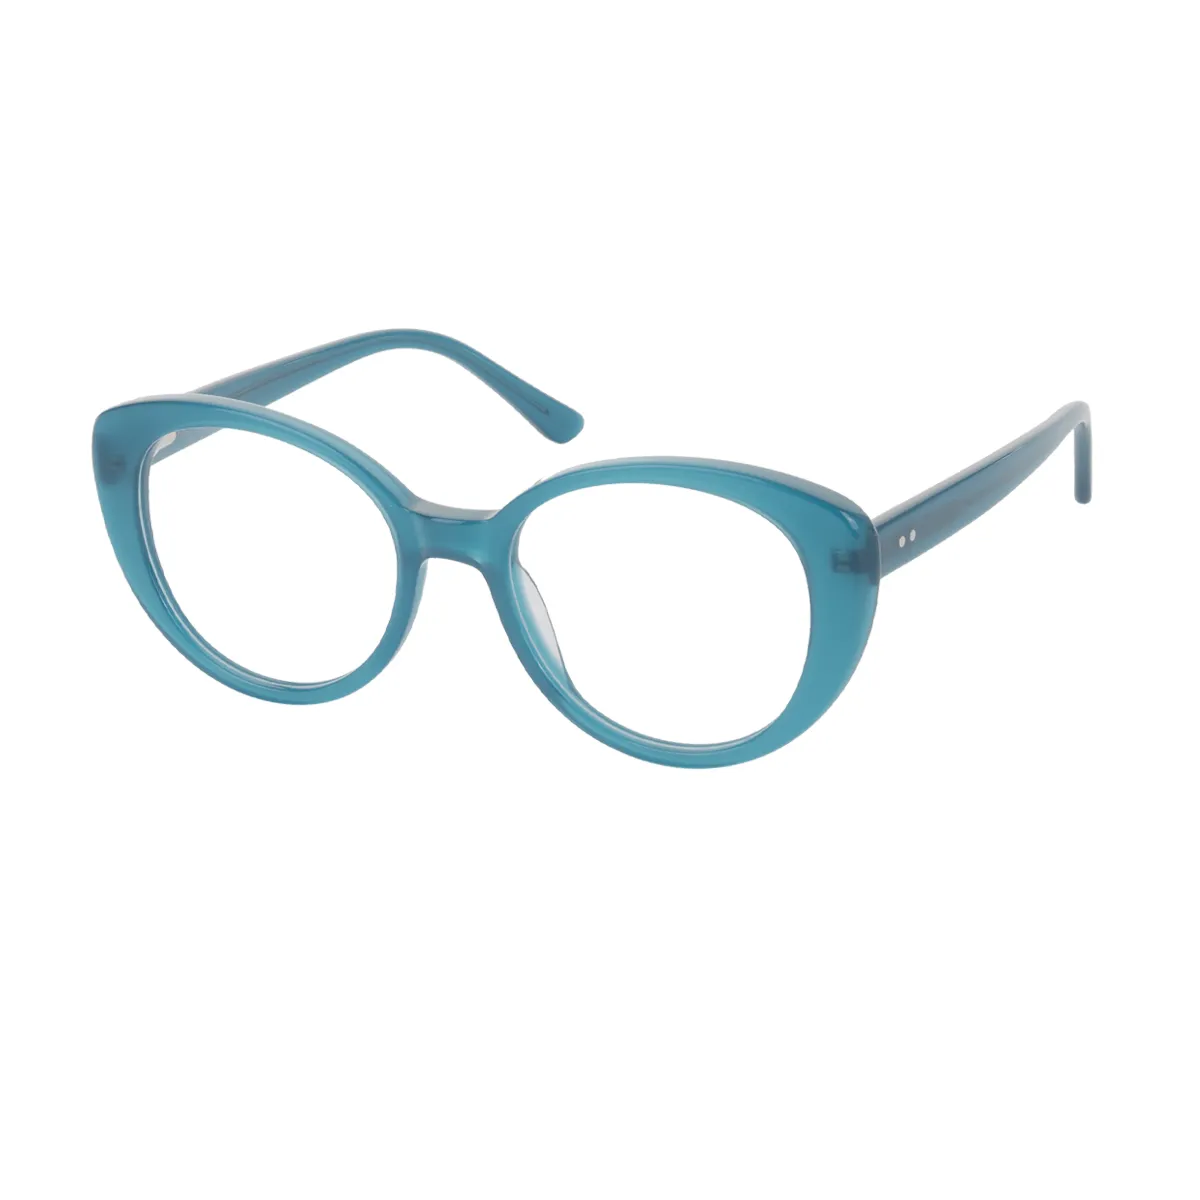 Classic Cat-eye Blue Glasses for Women